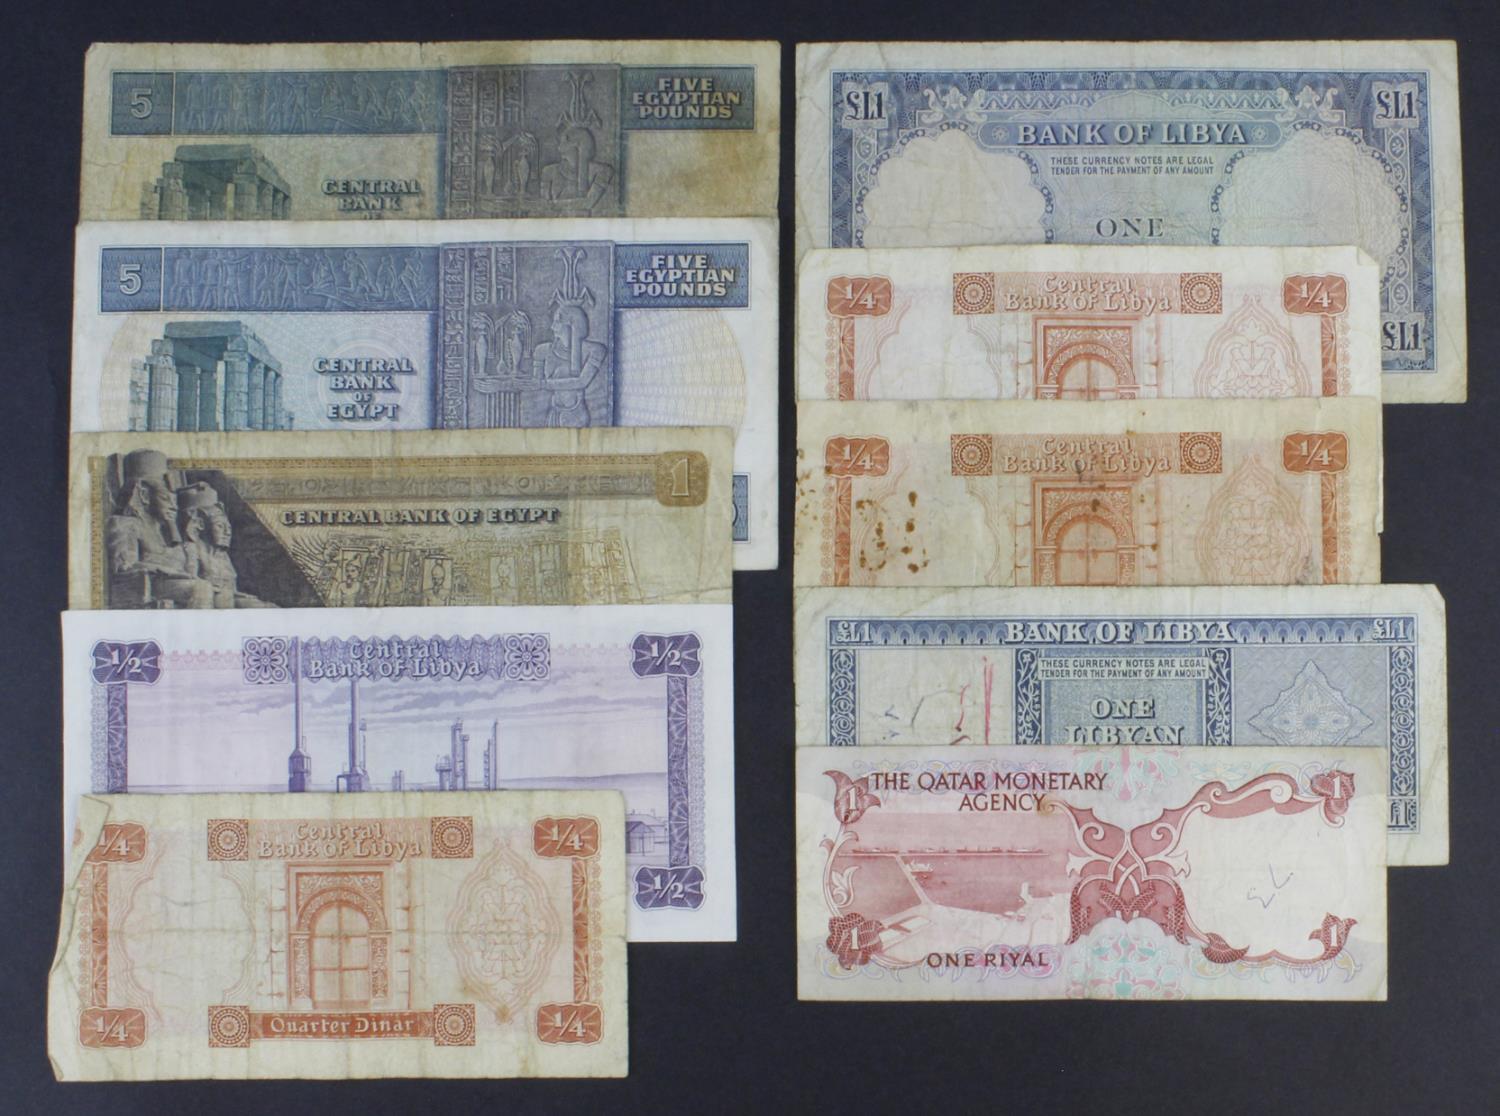 World, Middle East & North Africa (10), Qatar 1 Riyal 1973, Libya 1 Pound 1963 First Issue, Libya - Image 2 of 2